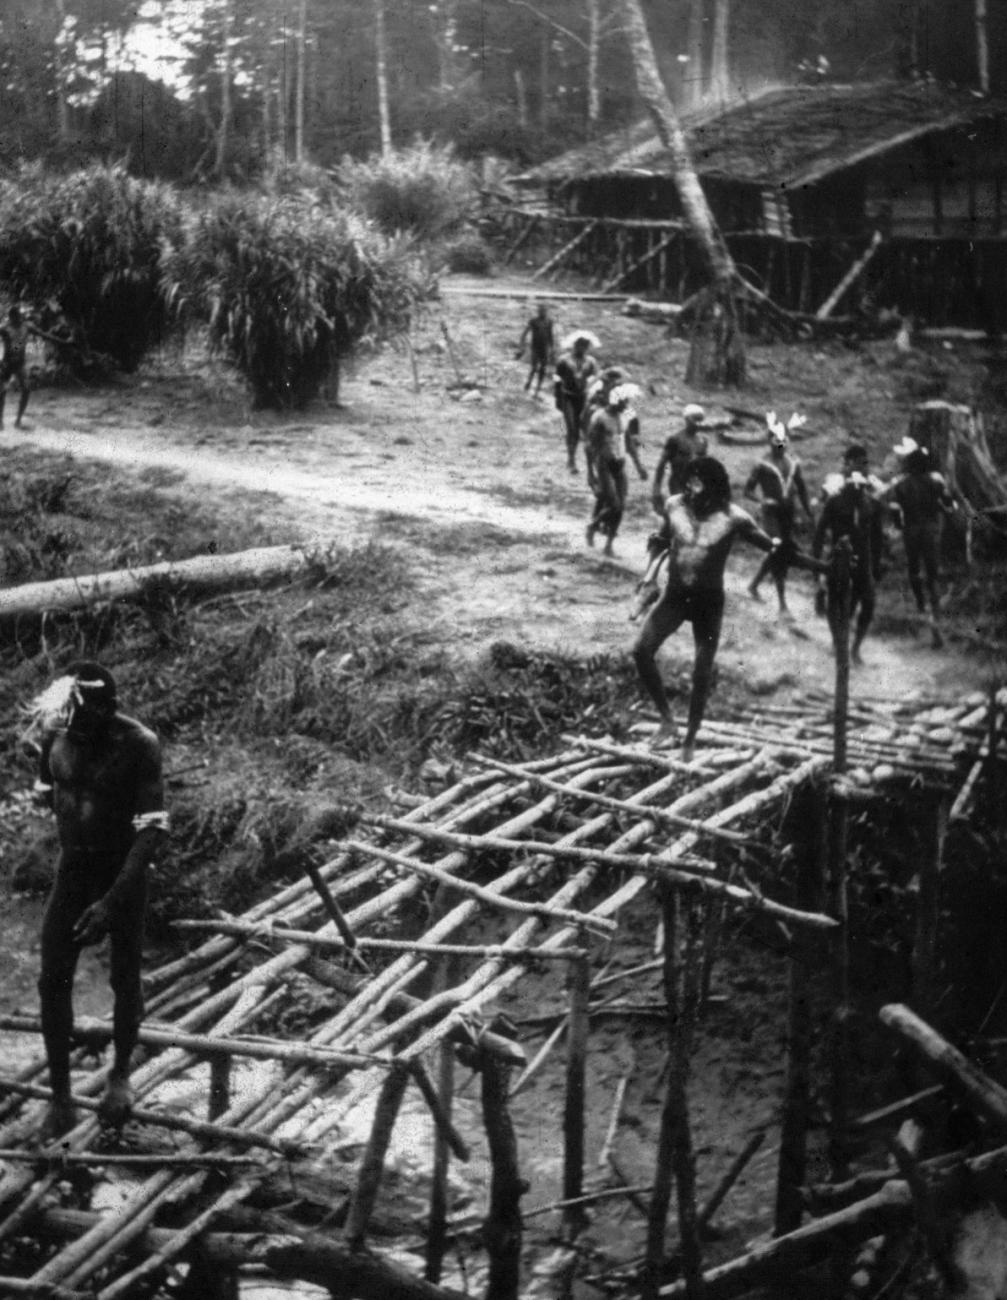 BD/216/118 - 
Mannen lopen op een oude voetbrug van stammetjes over een water
